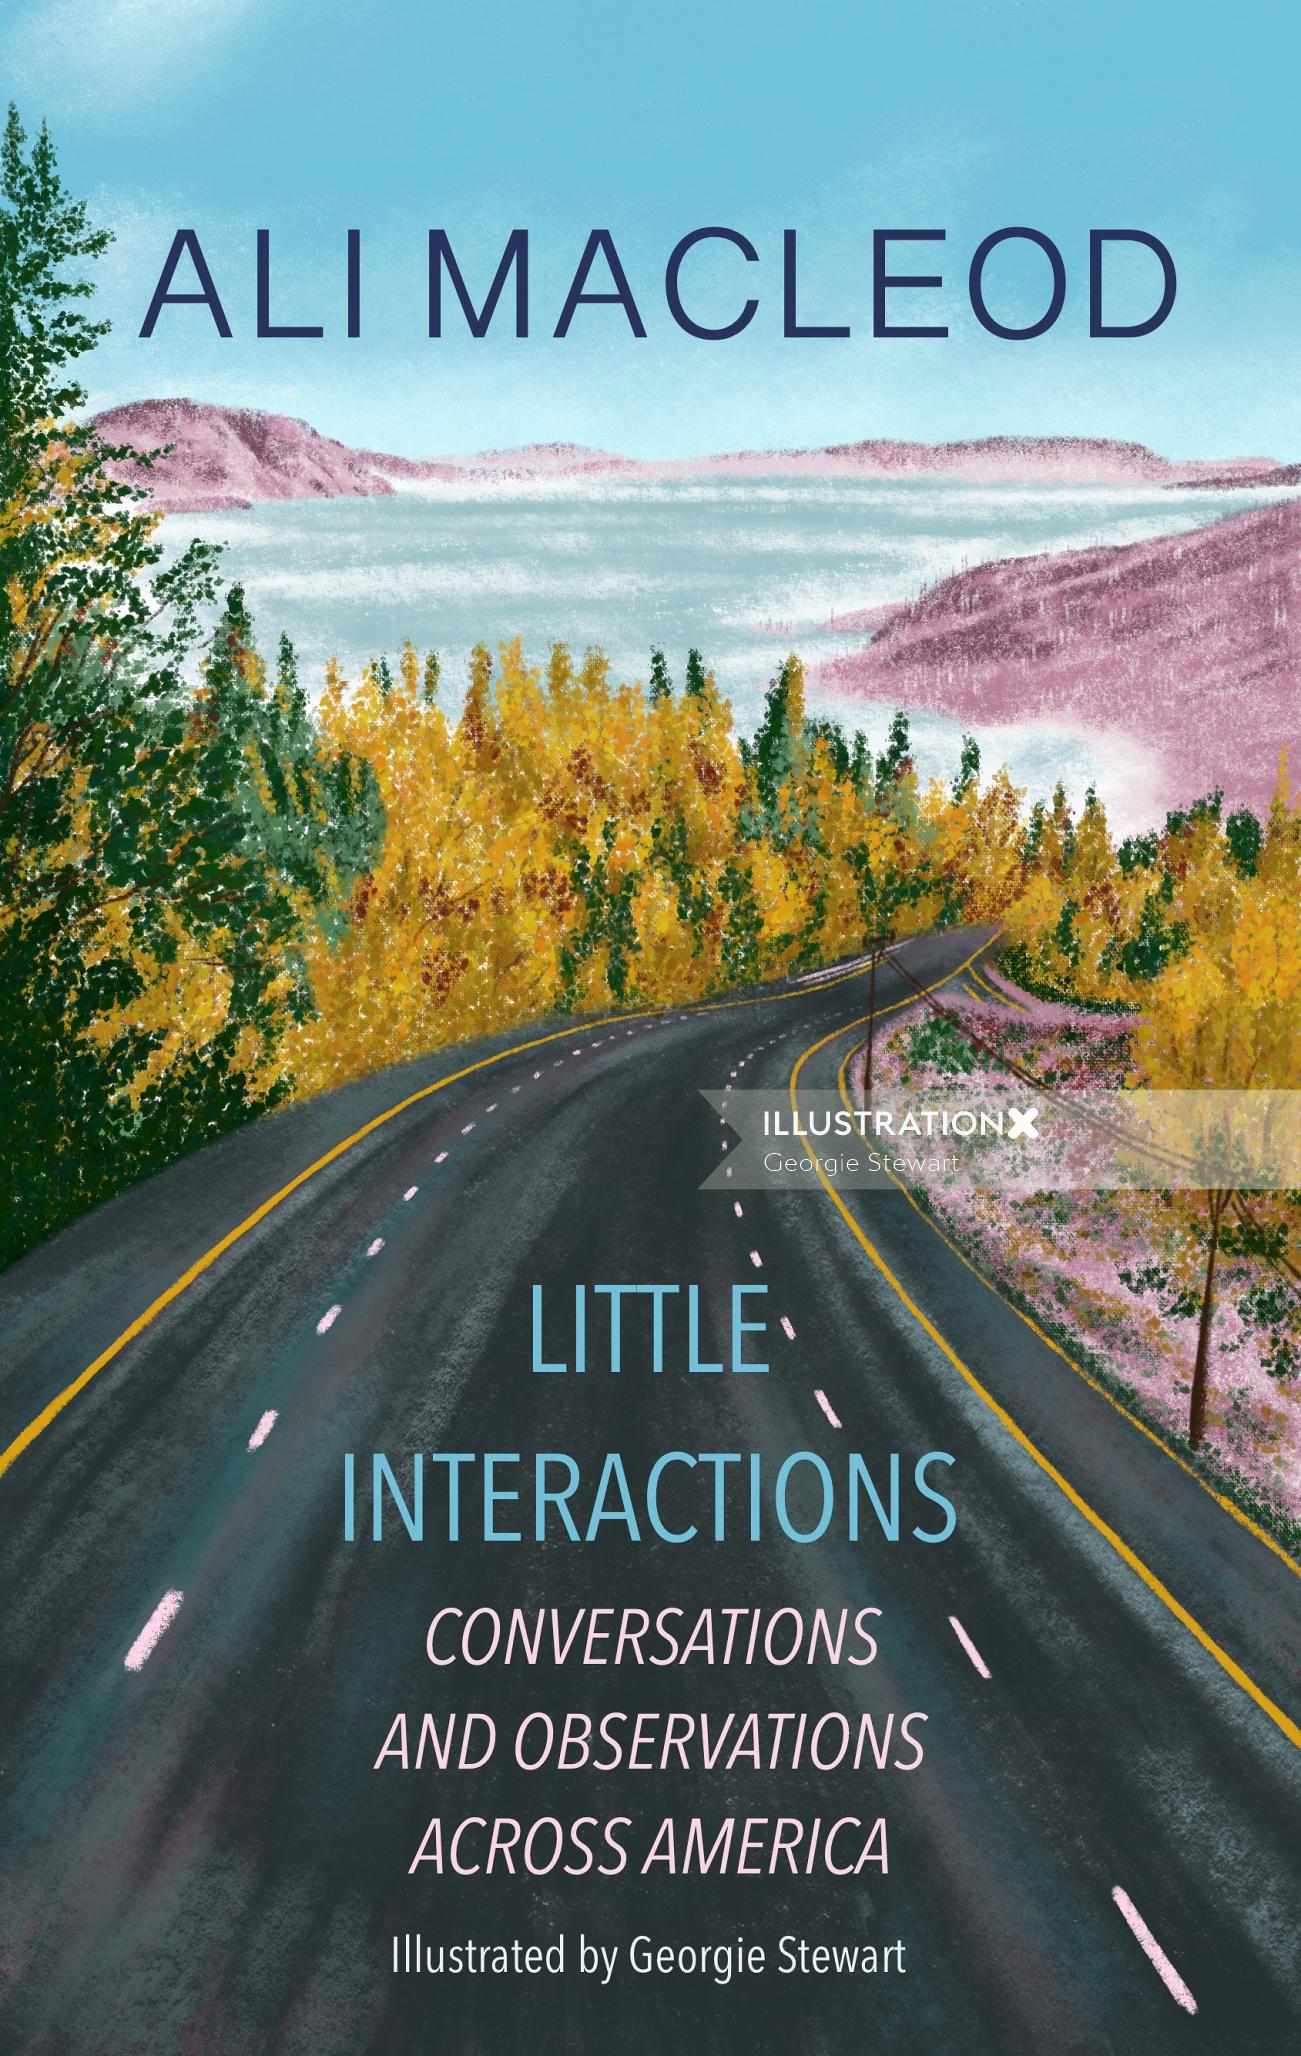 Ali MacLeod の「Little Interactions」のブックカバー アートワーク